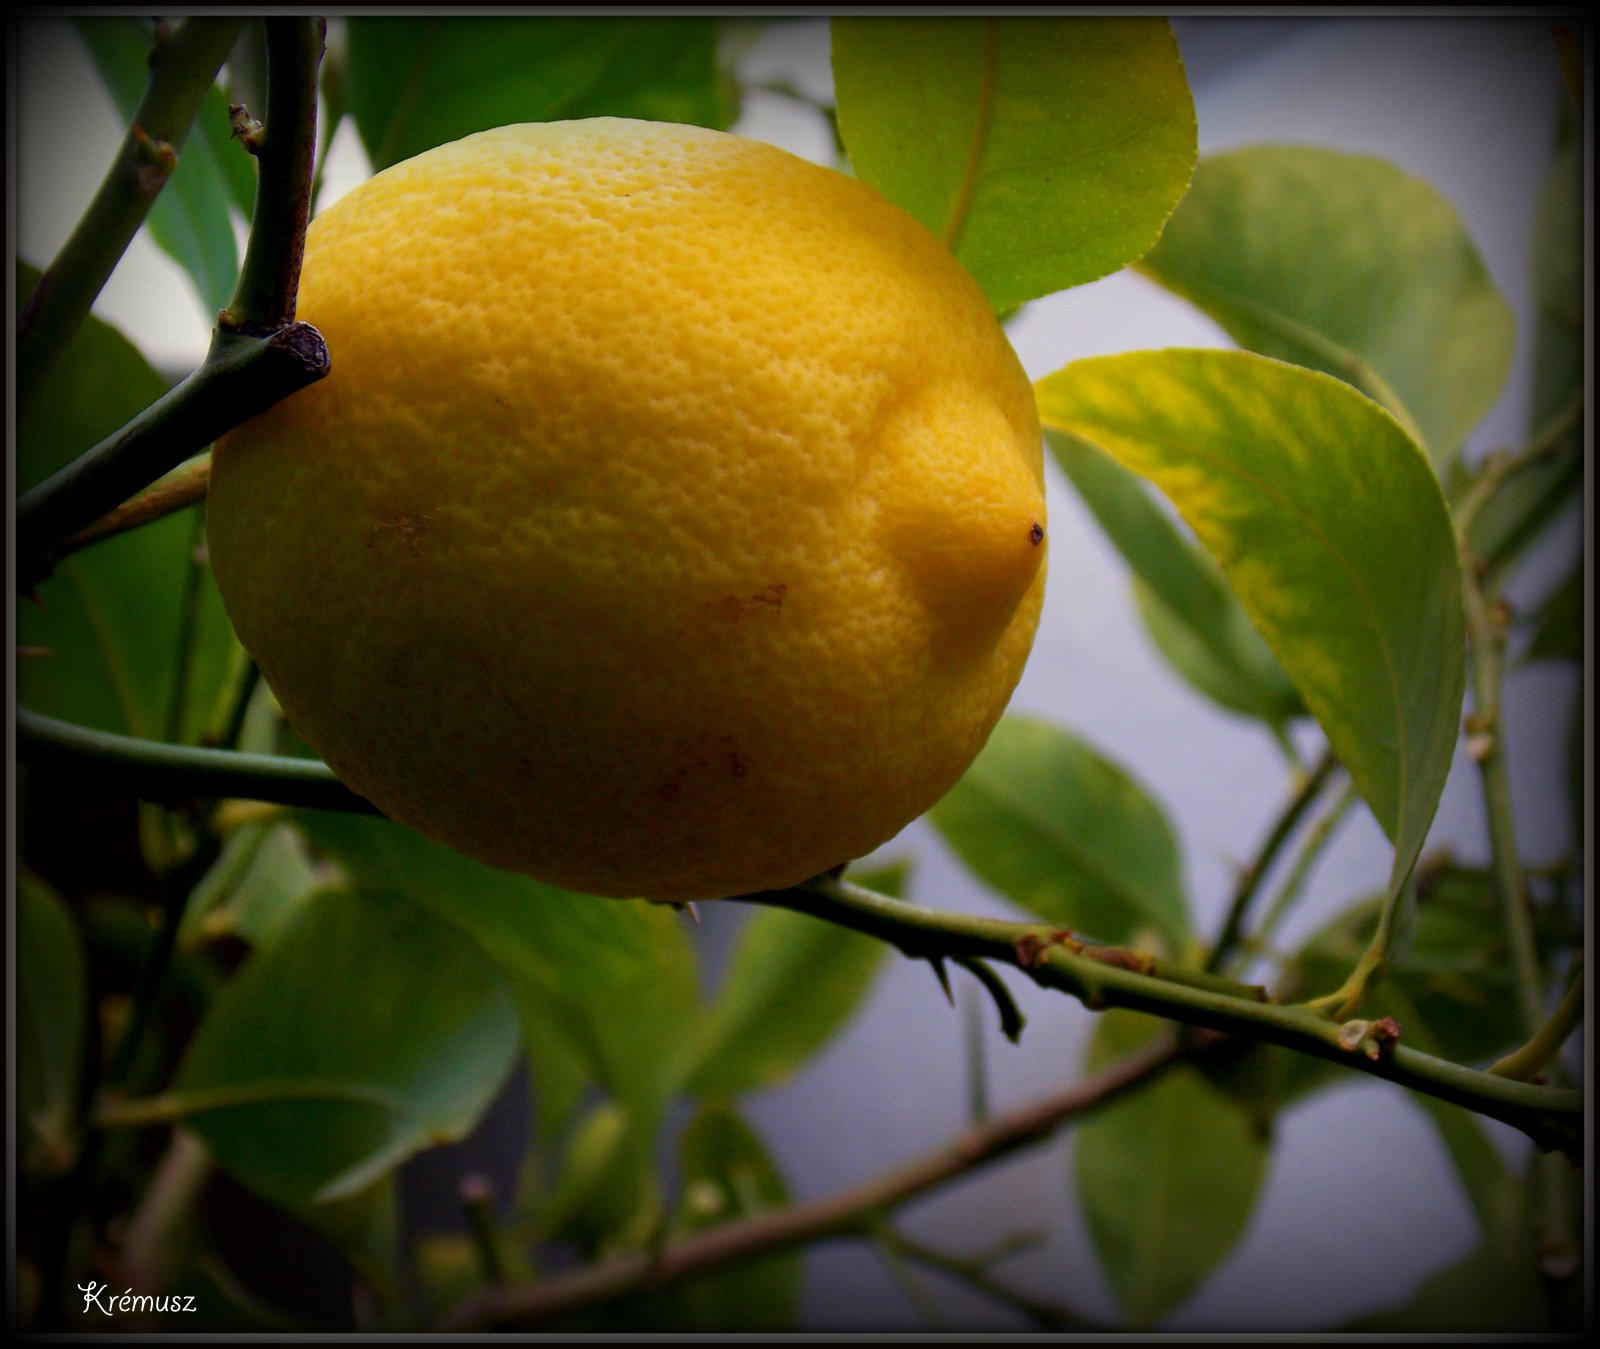 Megérett a citrom